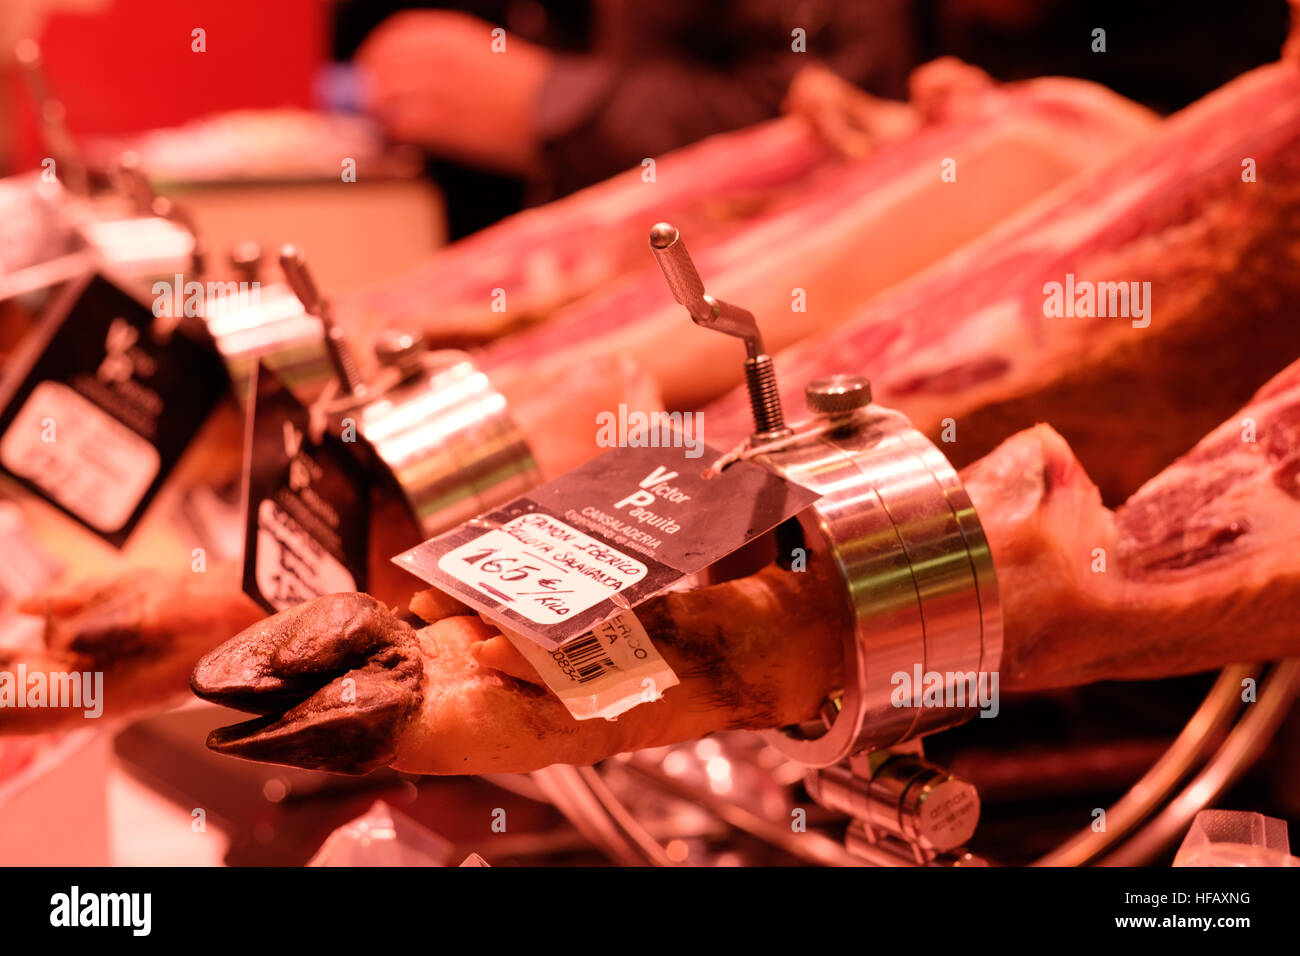 Katalanische geheilt Schinken Jamon Spanien Barcelona Fleisch Schweinefleisch Füße Hufe Stockfoto